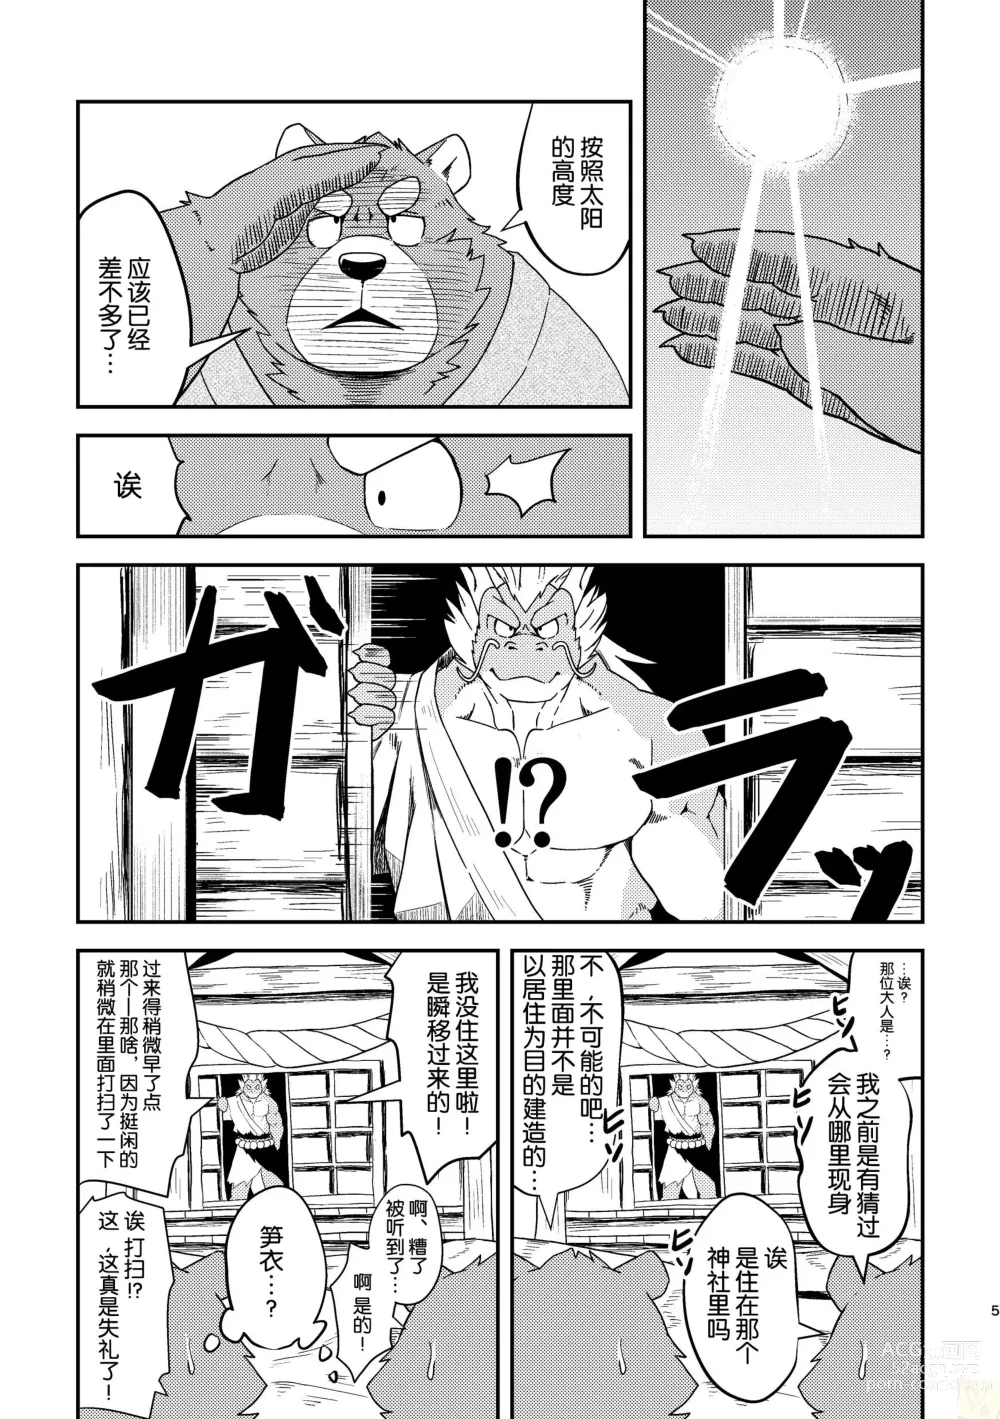 Page 5 of doujinshi SACRIFICE